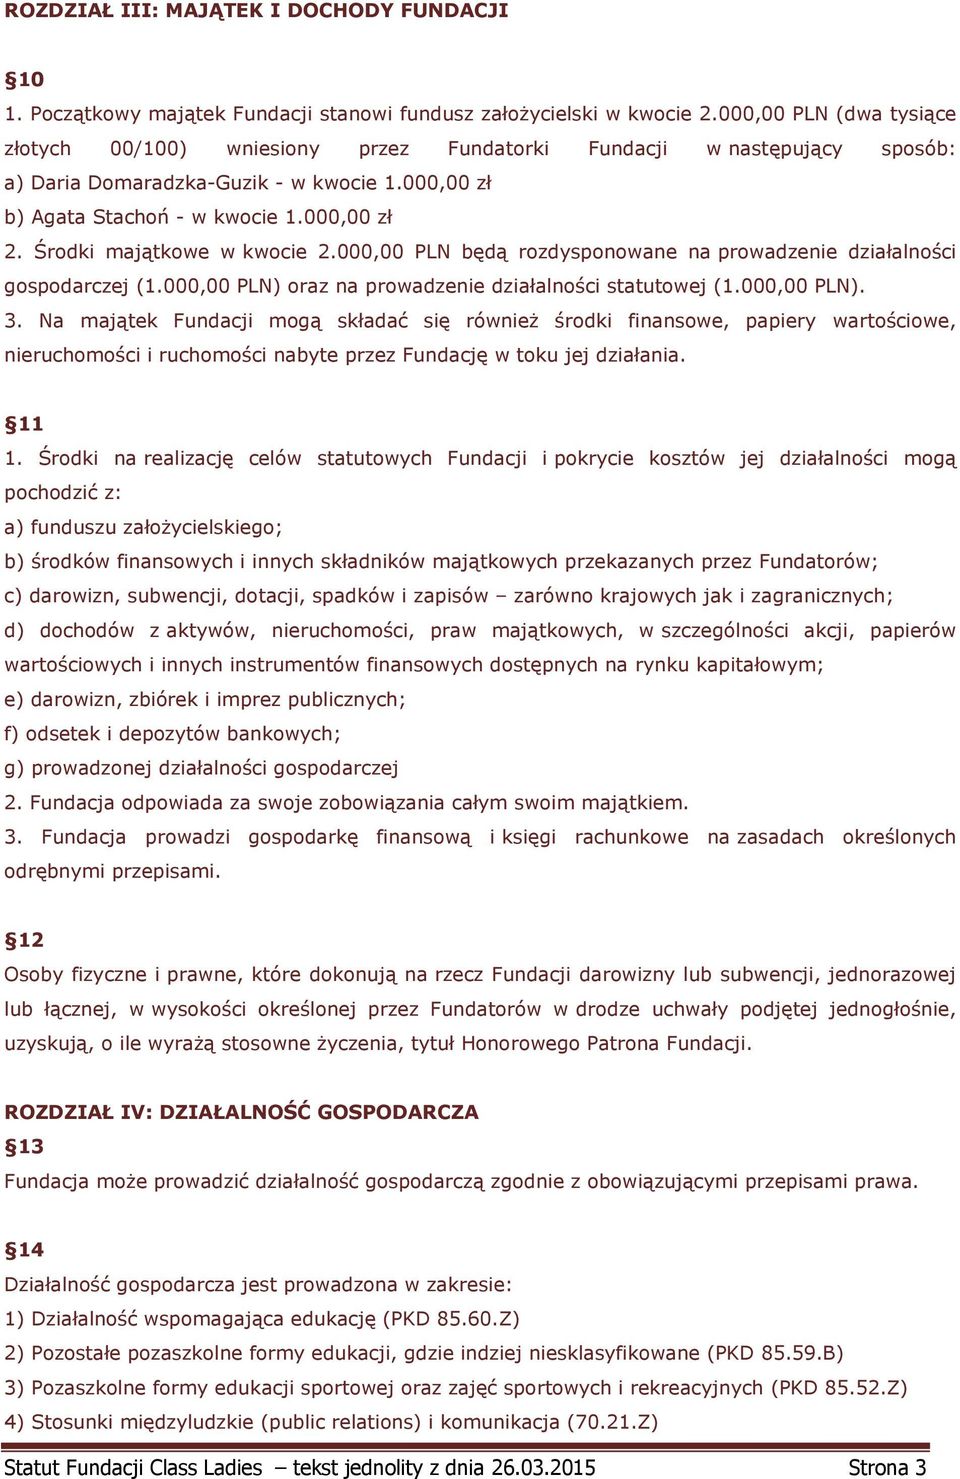 Środki majątkowe w kwocie 2.000,00 PLN będą rozdysponowane na prowadzenie działalności gospodarczej (1.000,00 PLN) oraz na prowadzenie działalności statutowej (1.000,00 PLN). 3.